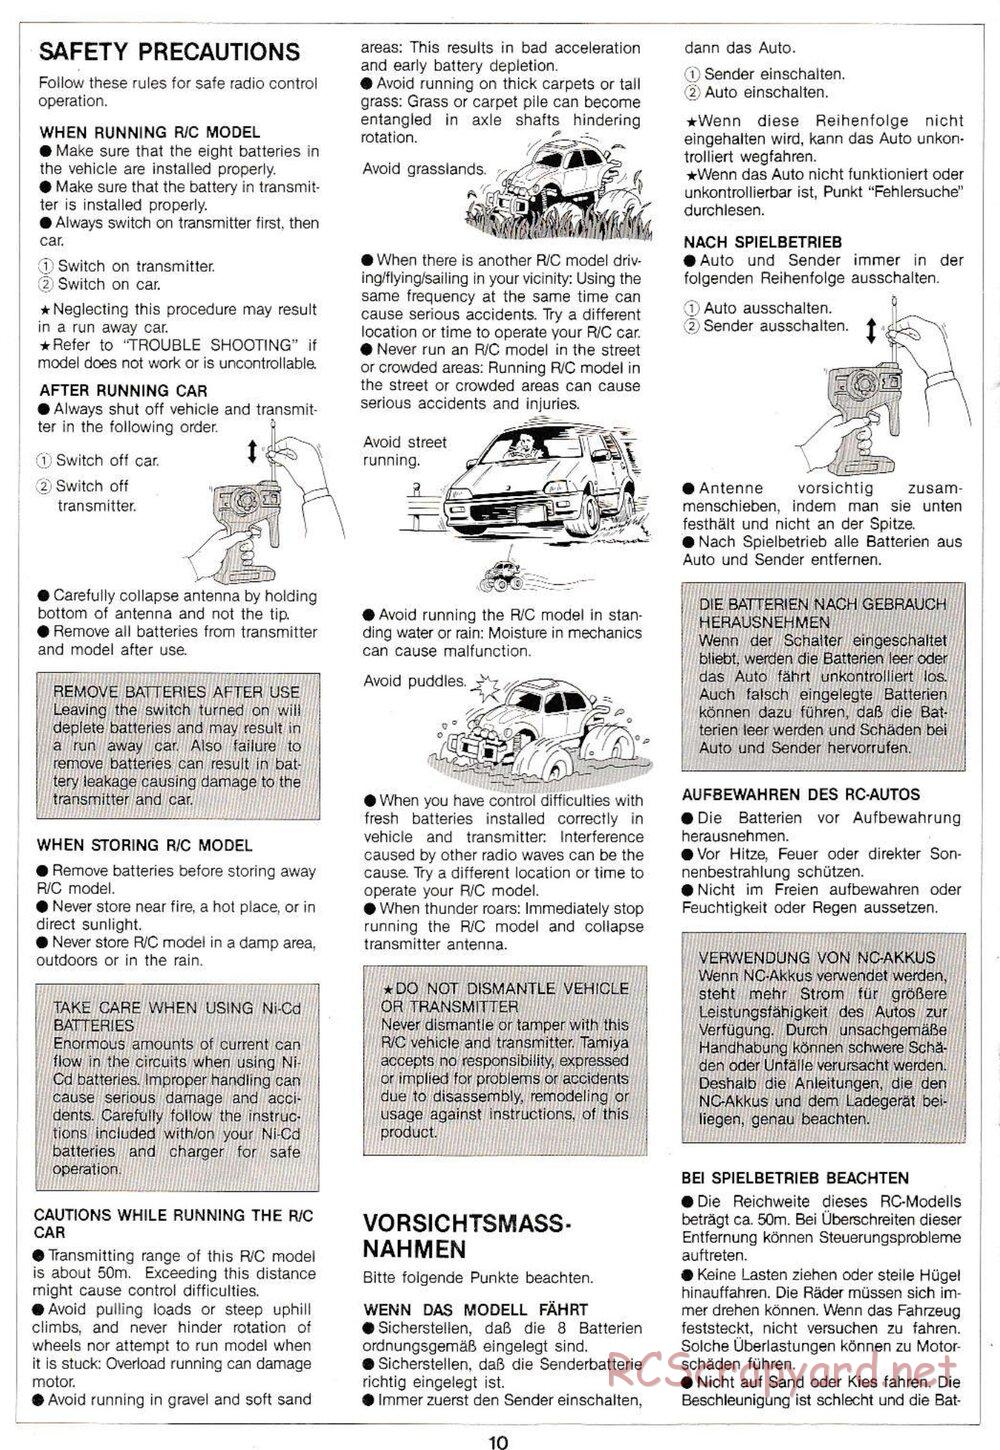 Tamiya - Monster Beetle QD Chassis - Manual - Page 10